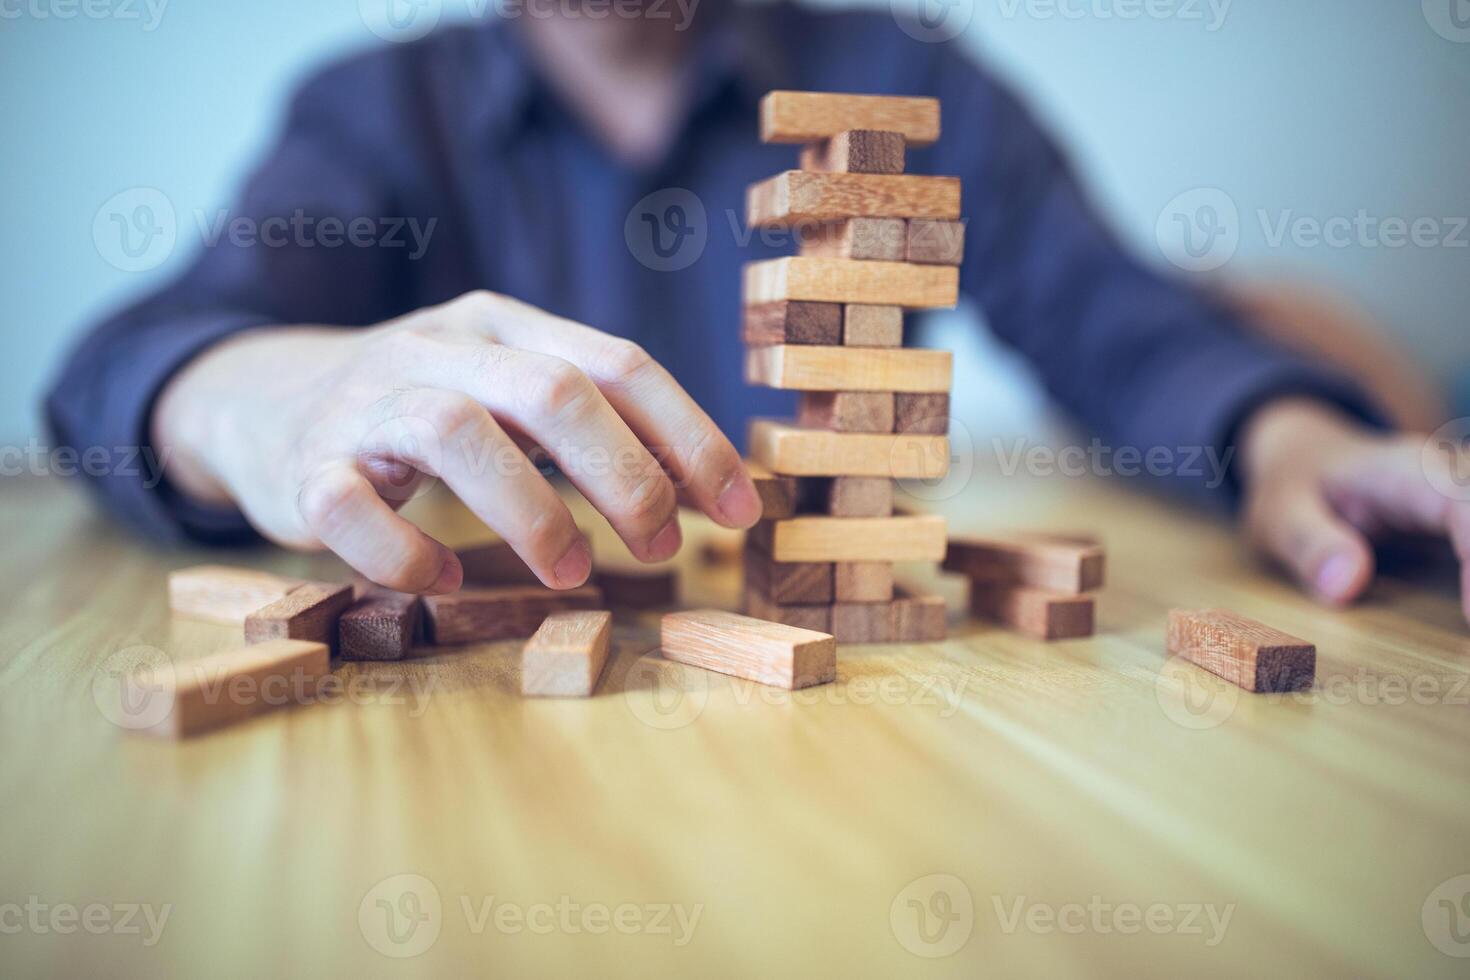 negocio estrategia concepto con manos jugando un de madera bloquear torre juego, simbolizando riesgo y estabilidad. planificación riesgo administración foto